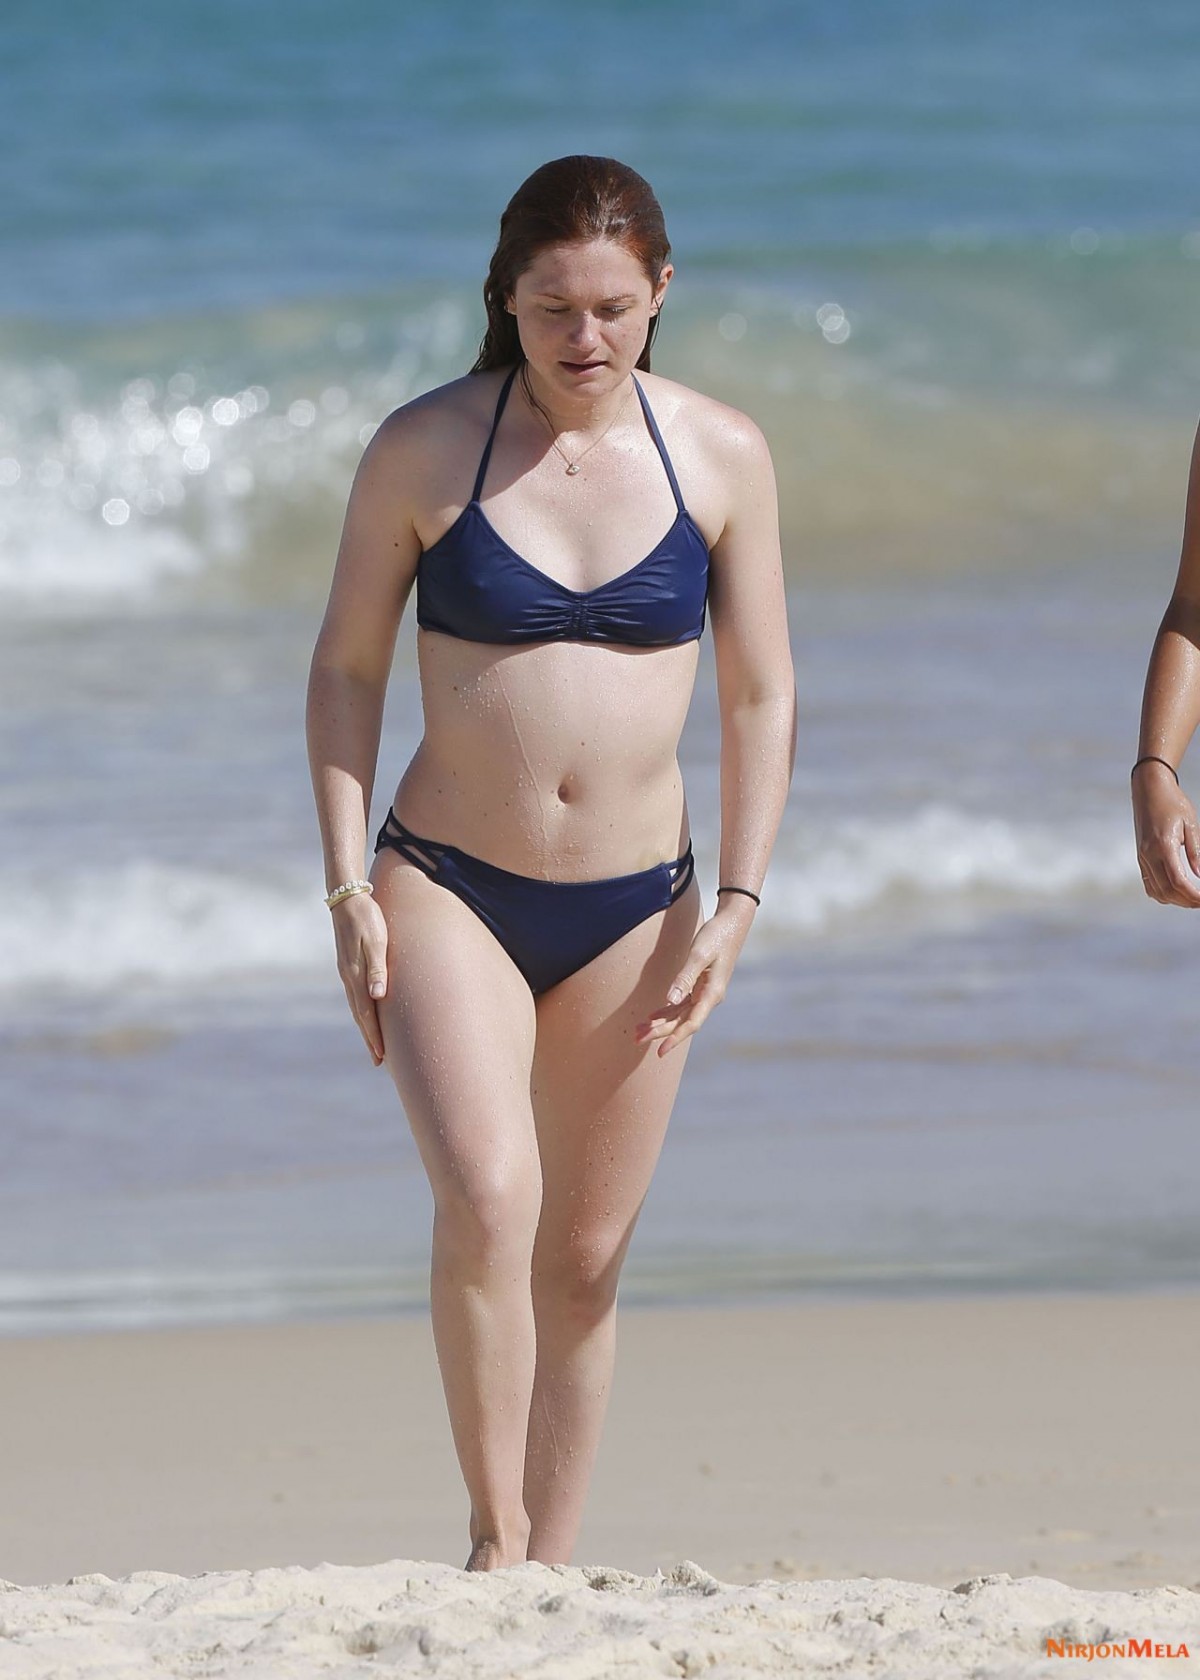 bonnie-wright-in-a-bikini-bondie-beach-in-sydney-april-2019-0.jpg